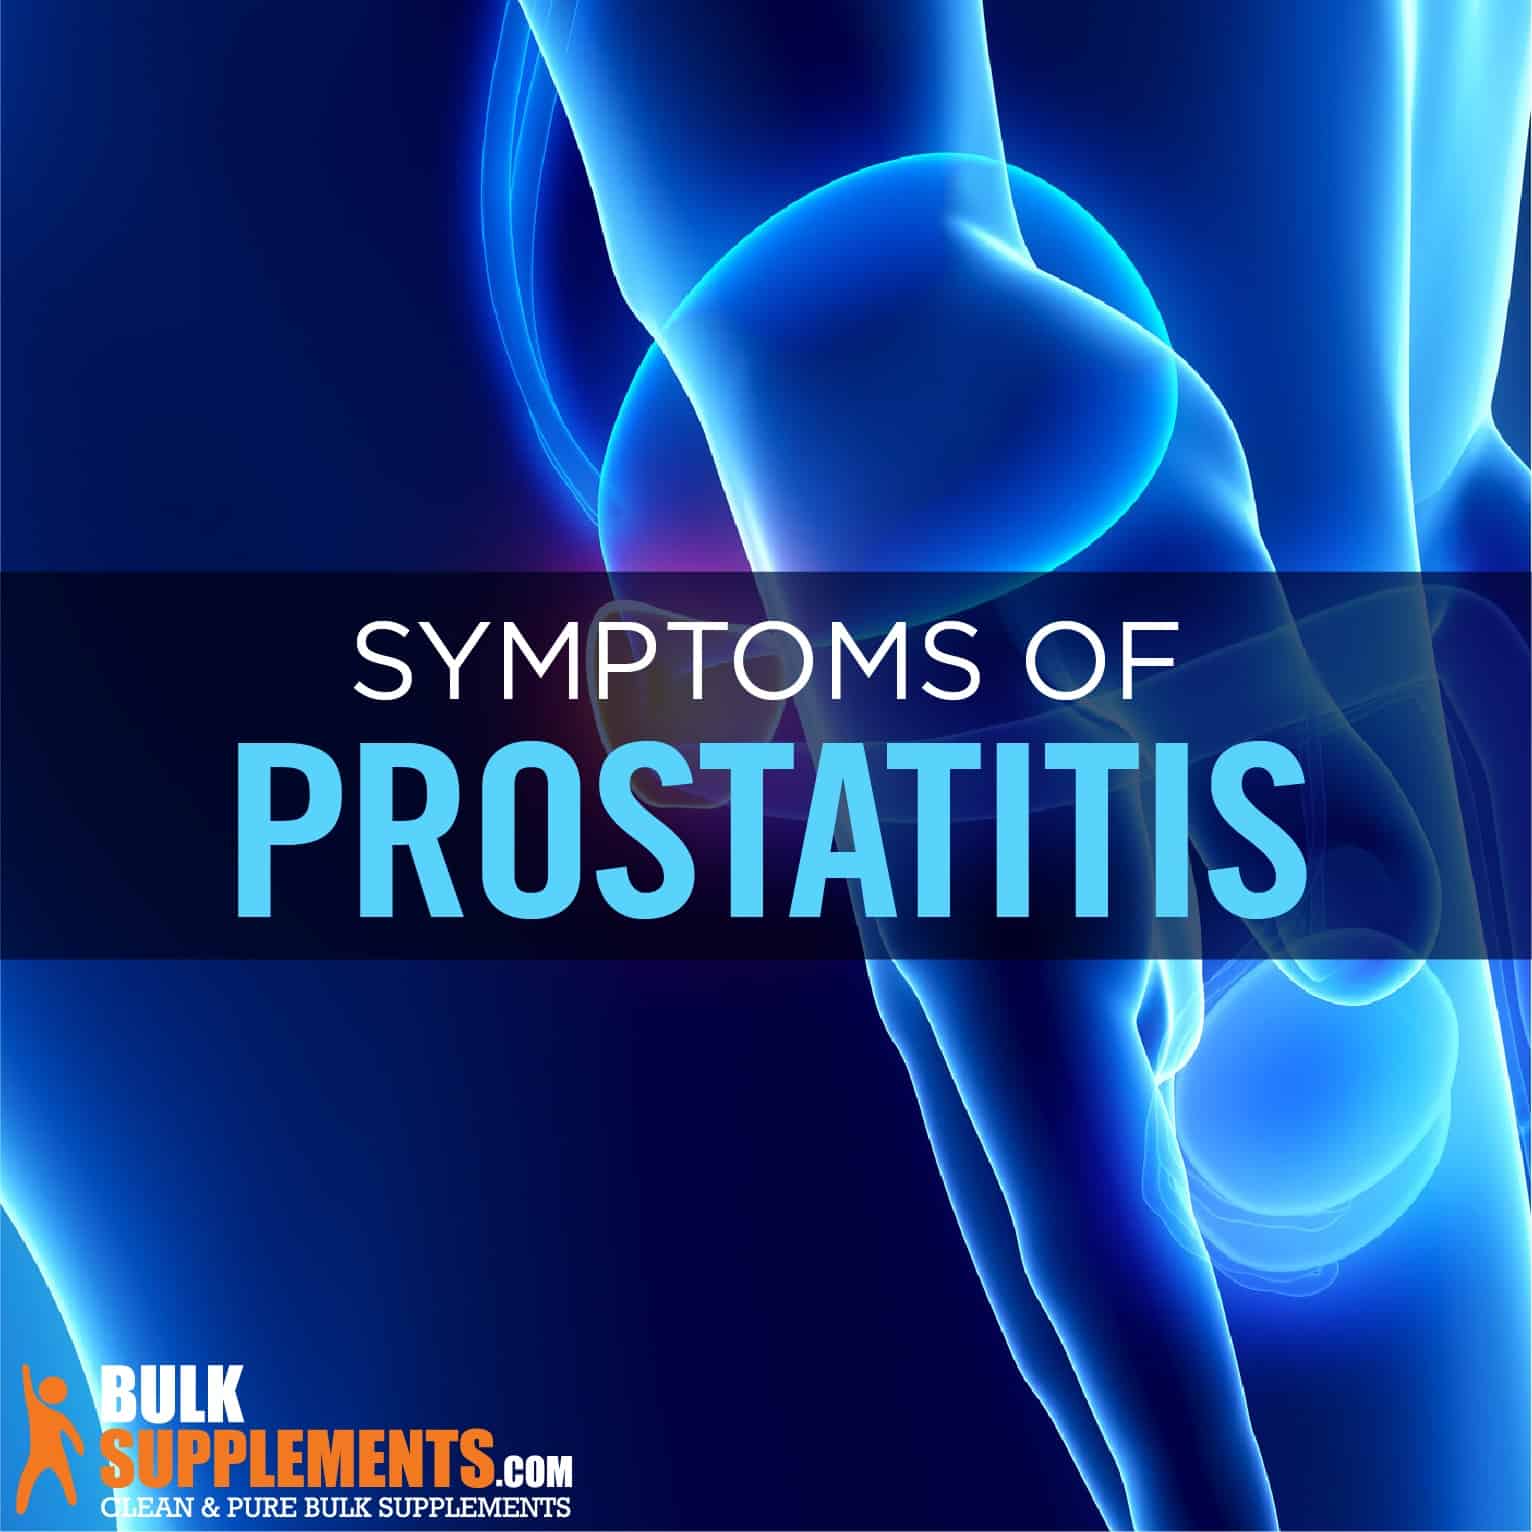 chronic prostatitis symptoms come and go)